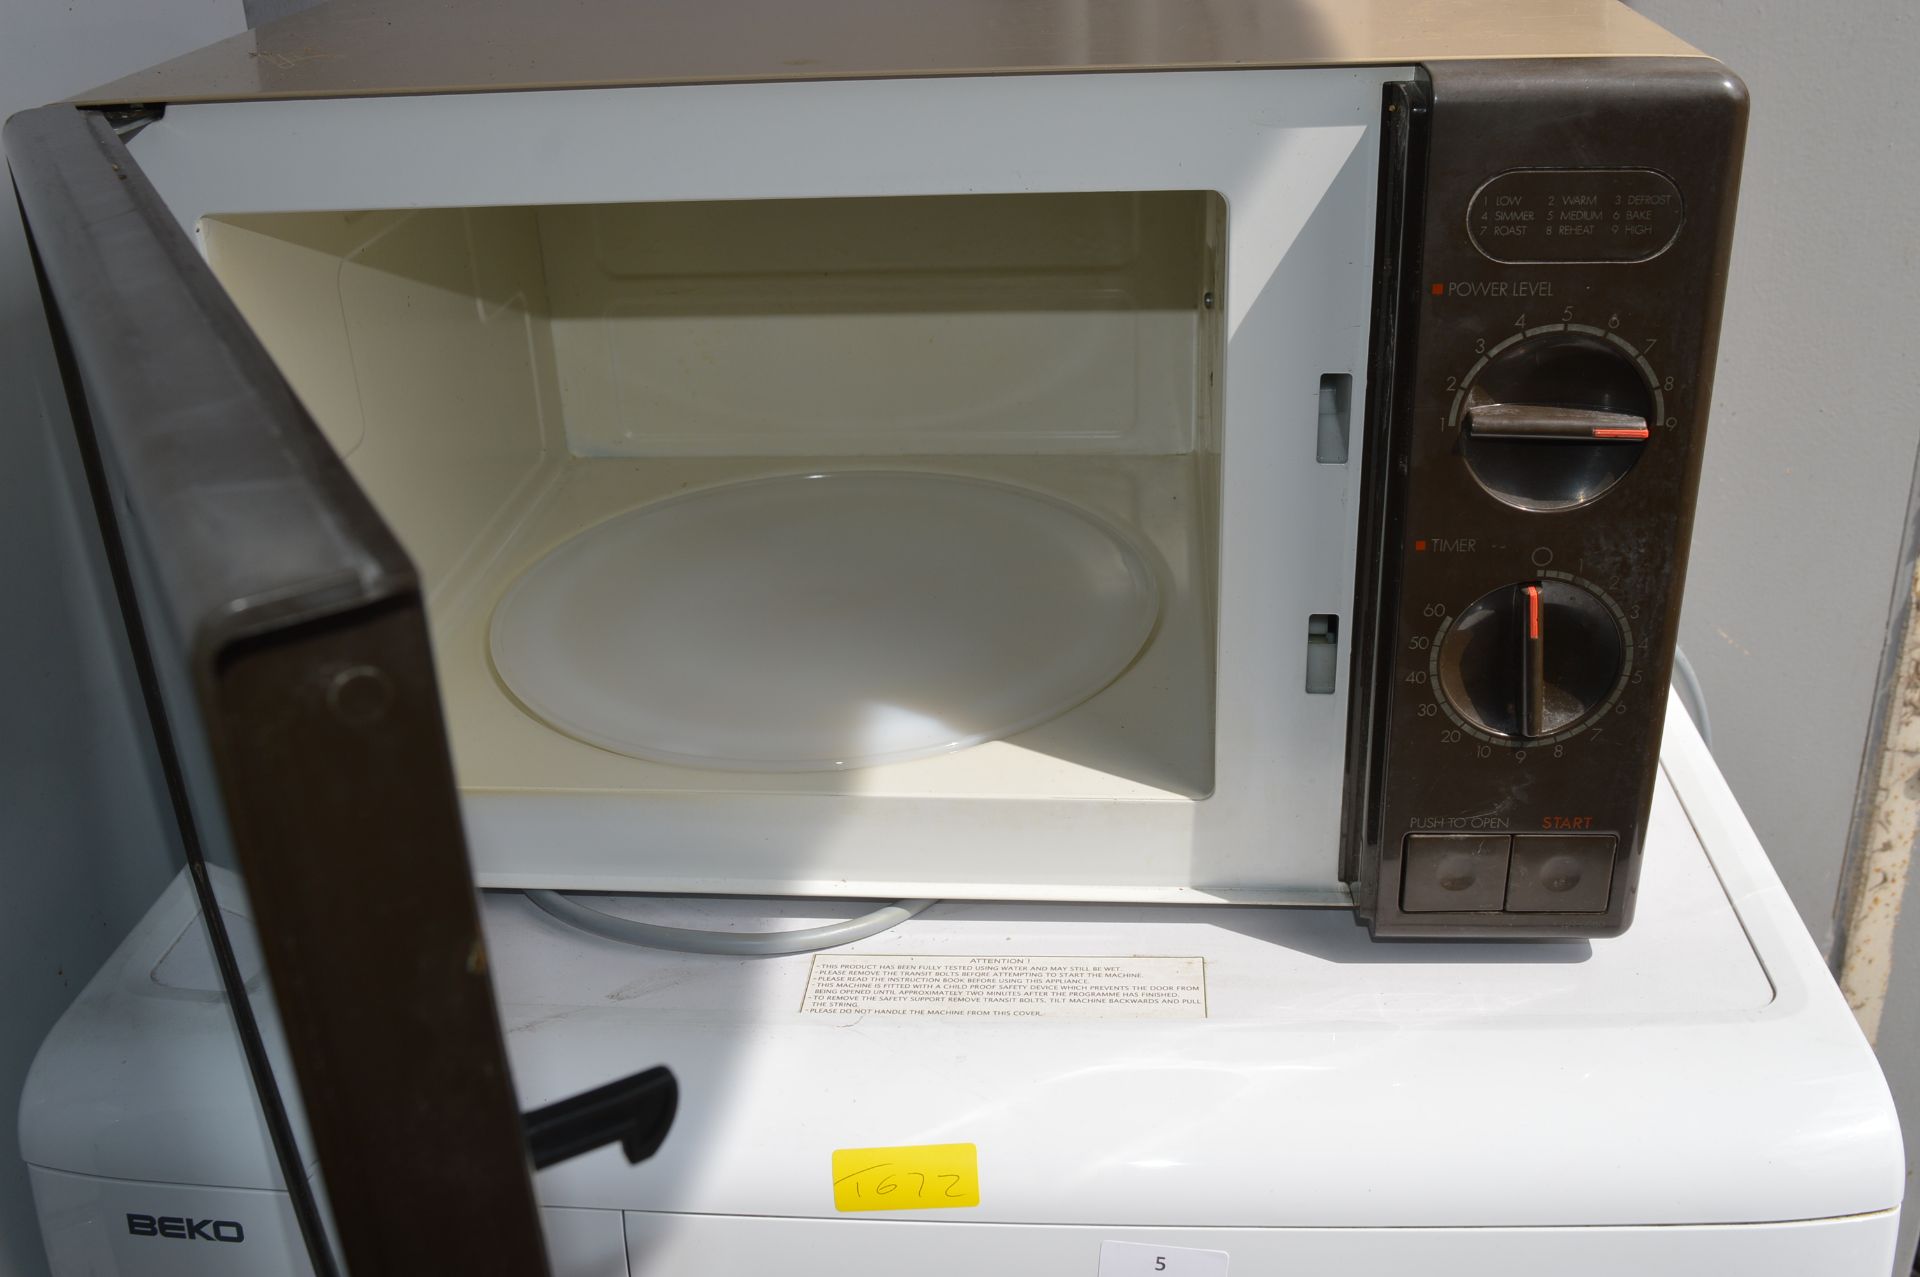 Toshiba Microwave Oven - Image 2 of 2